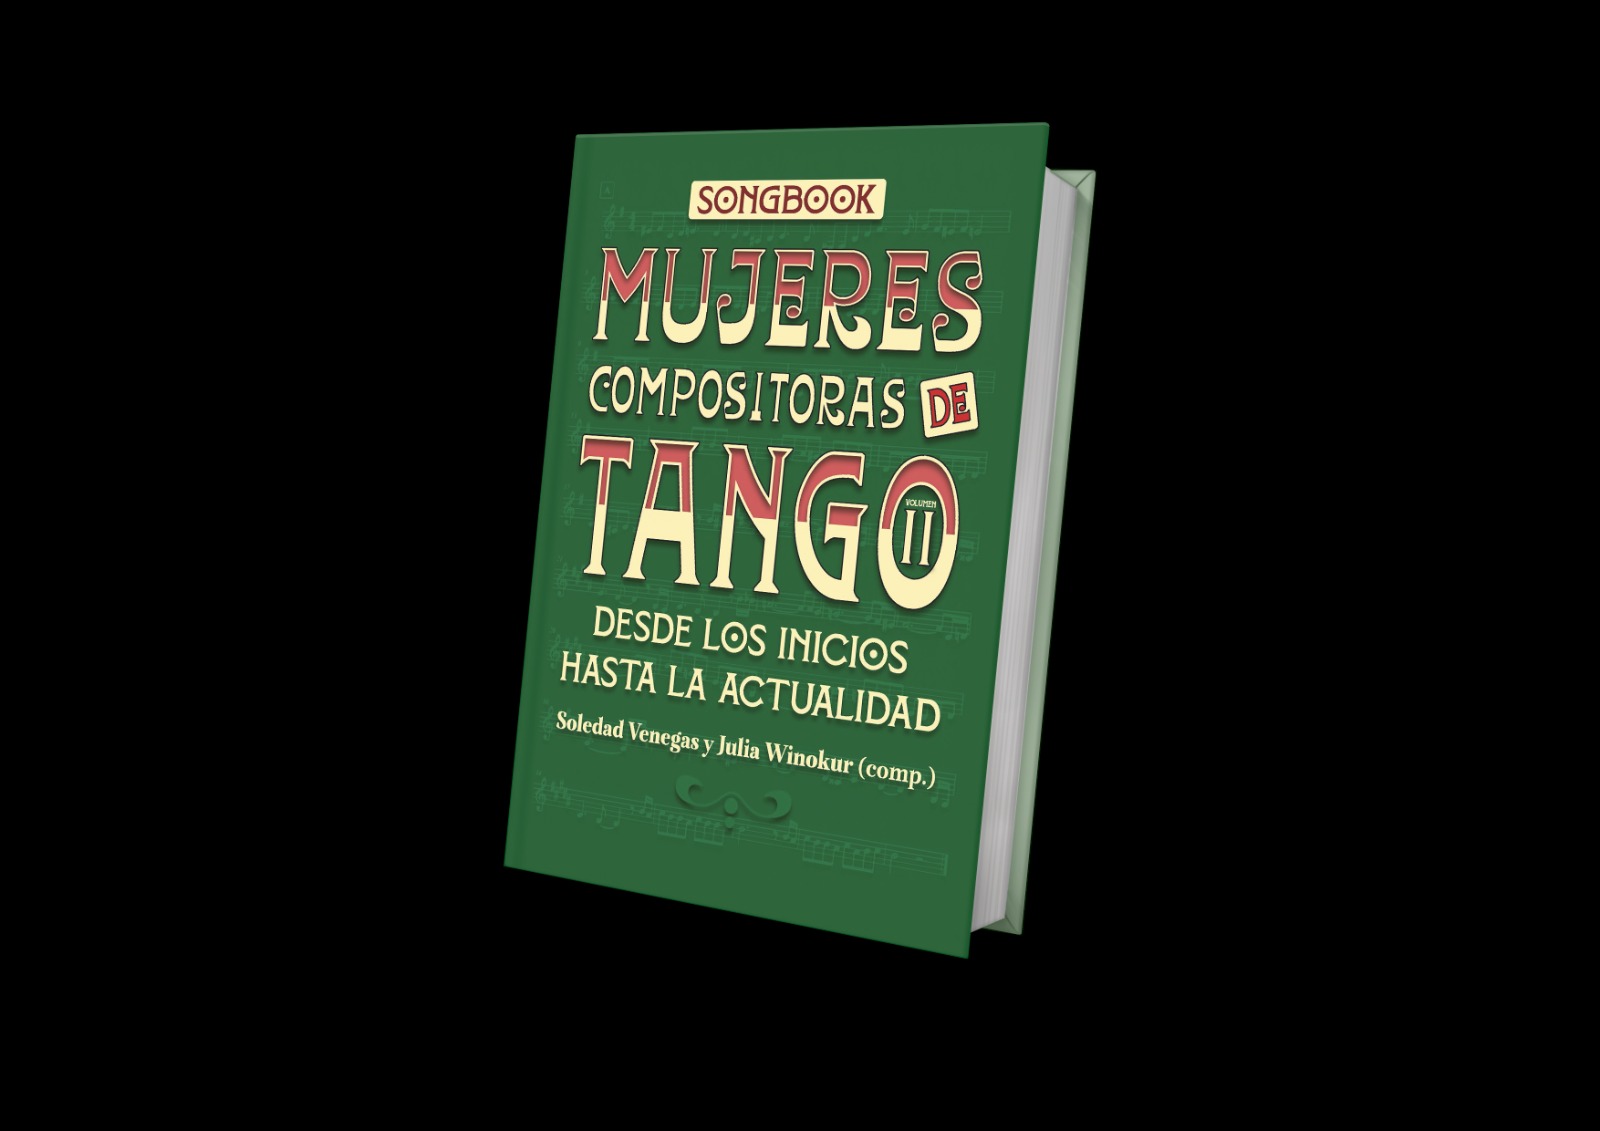 Songbook Mujeres compositoras de tango: Desde los inicios hasta la actualidad. Vol 2